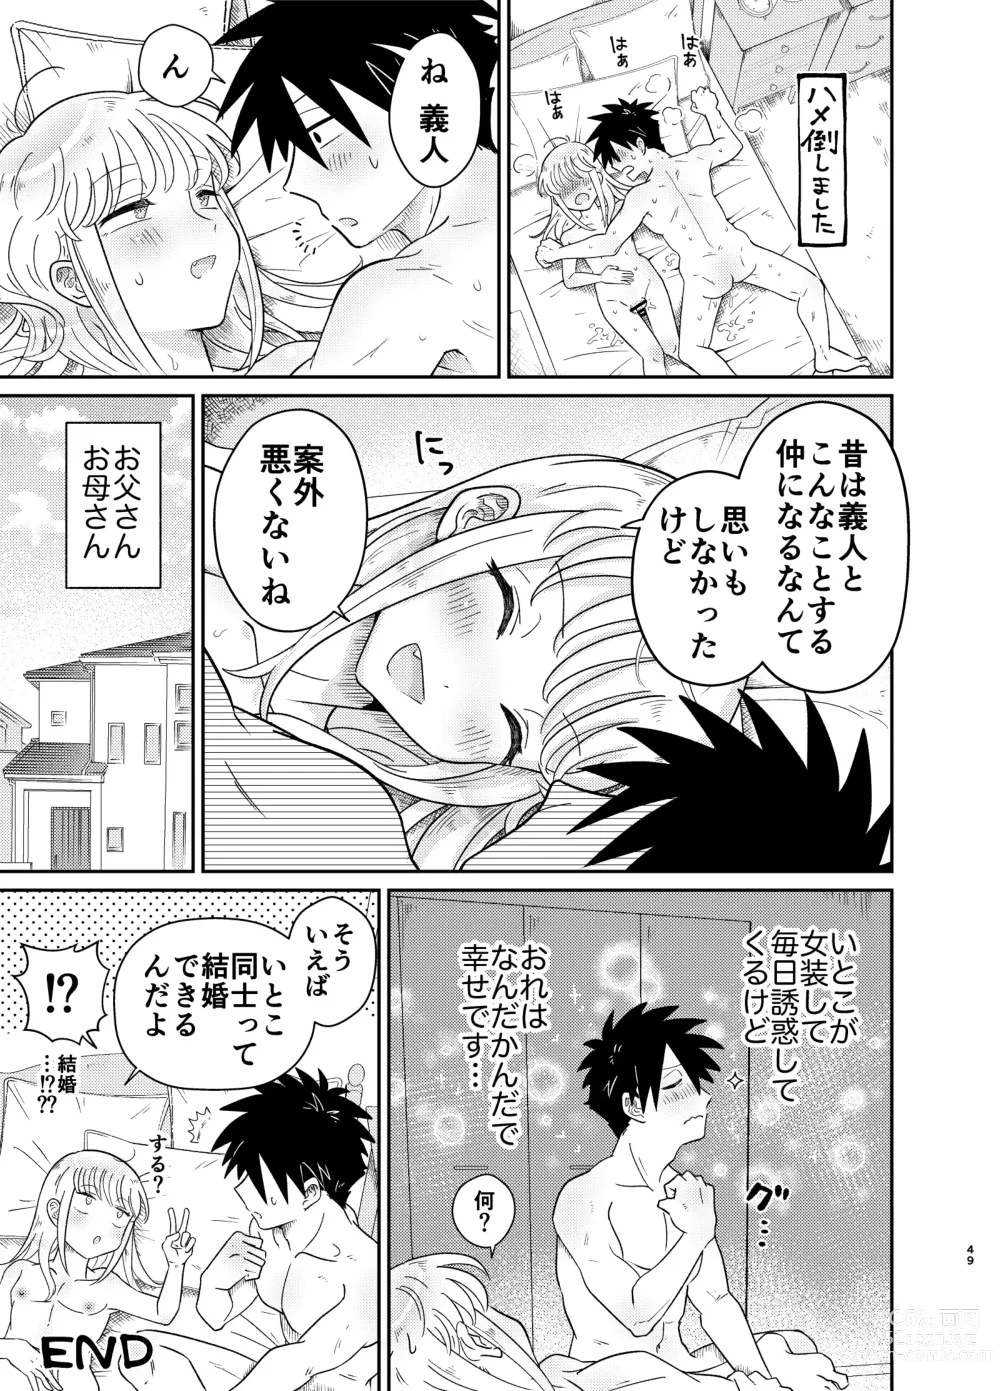 Page 49 of doujinshi Mechakucha Kawaikute Ecchi na Itoko wa Suki desu ka?